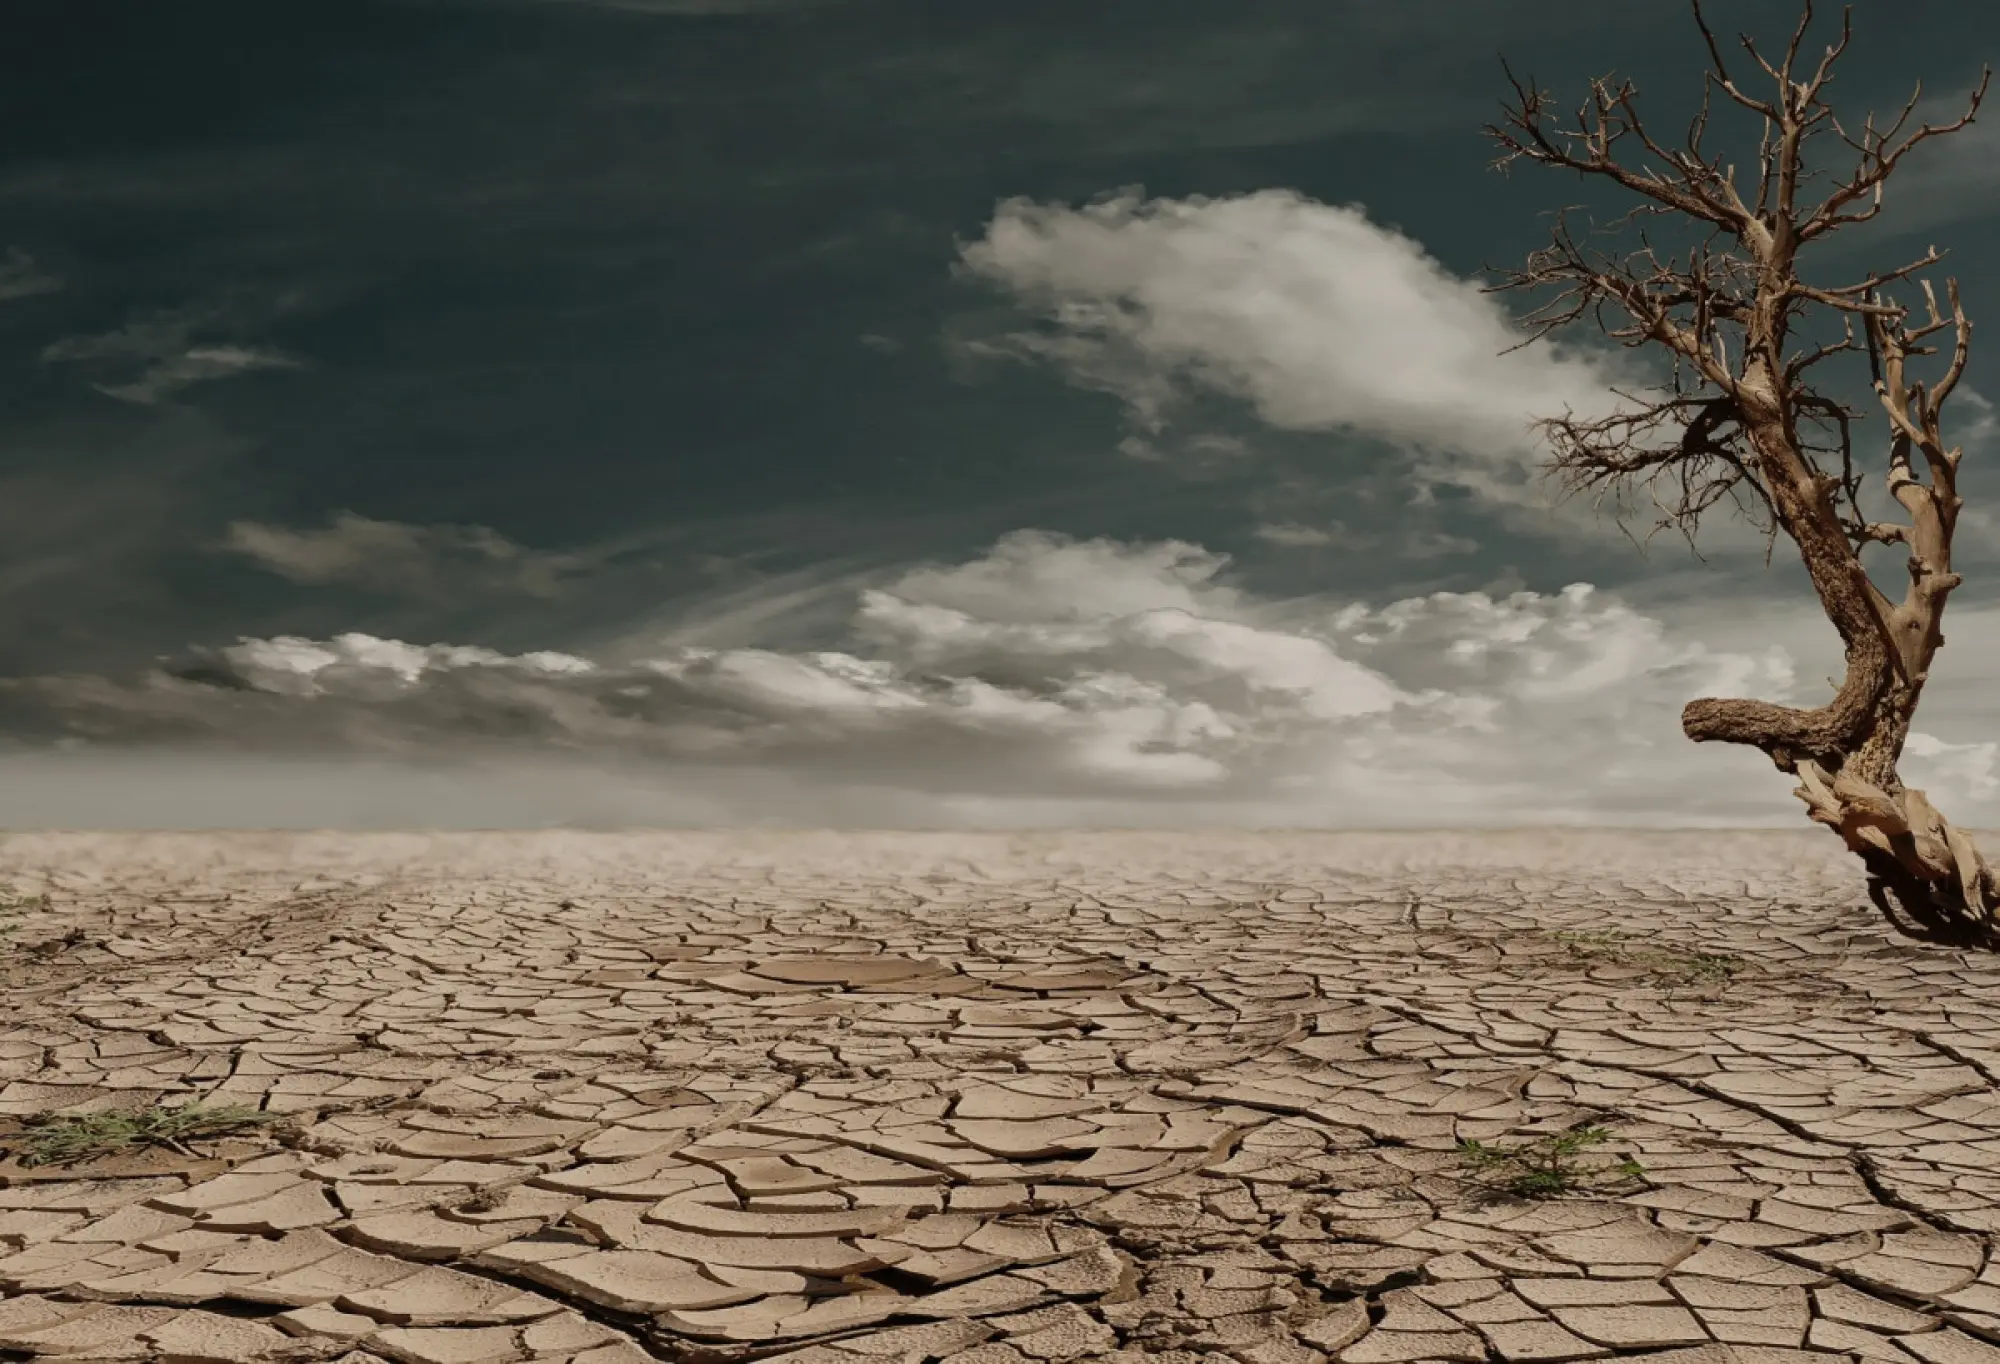 image of a barren desert